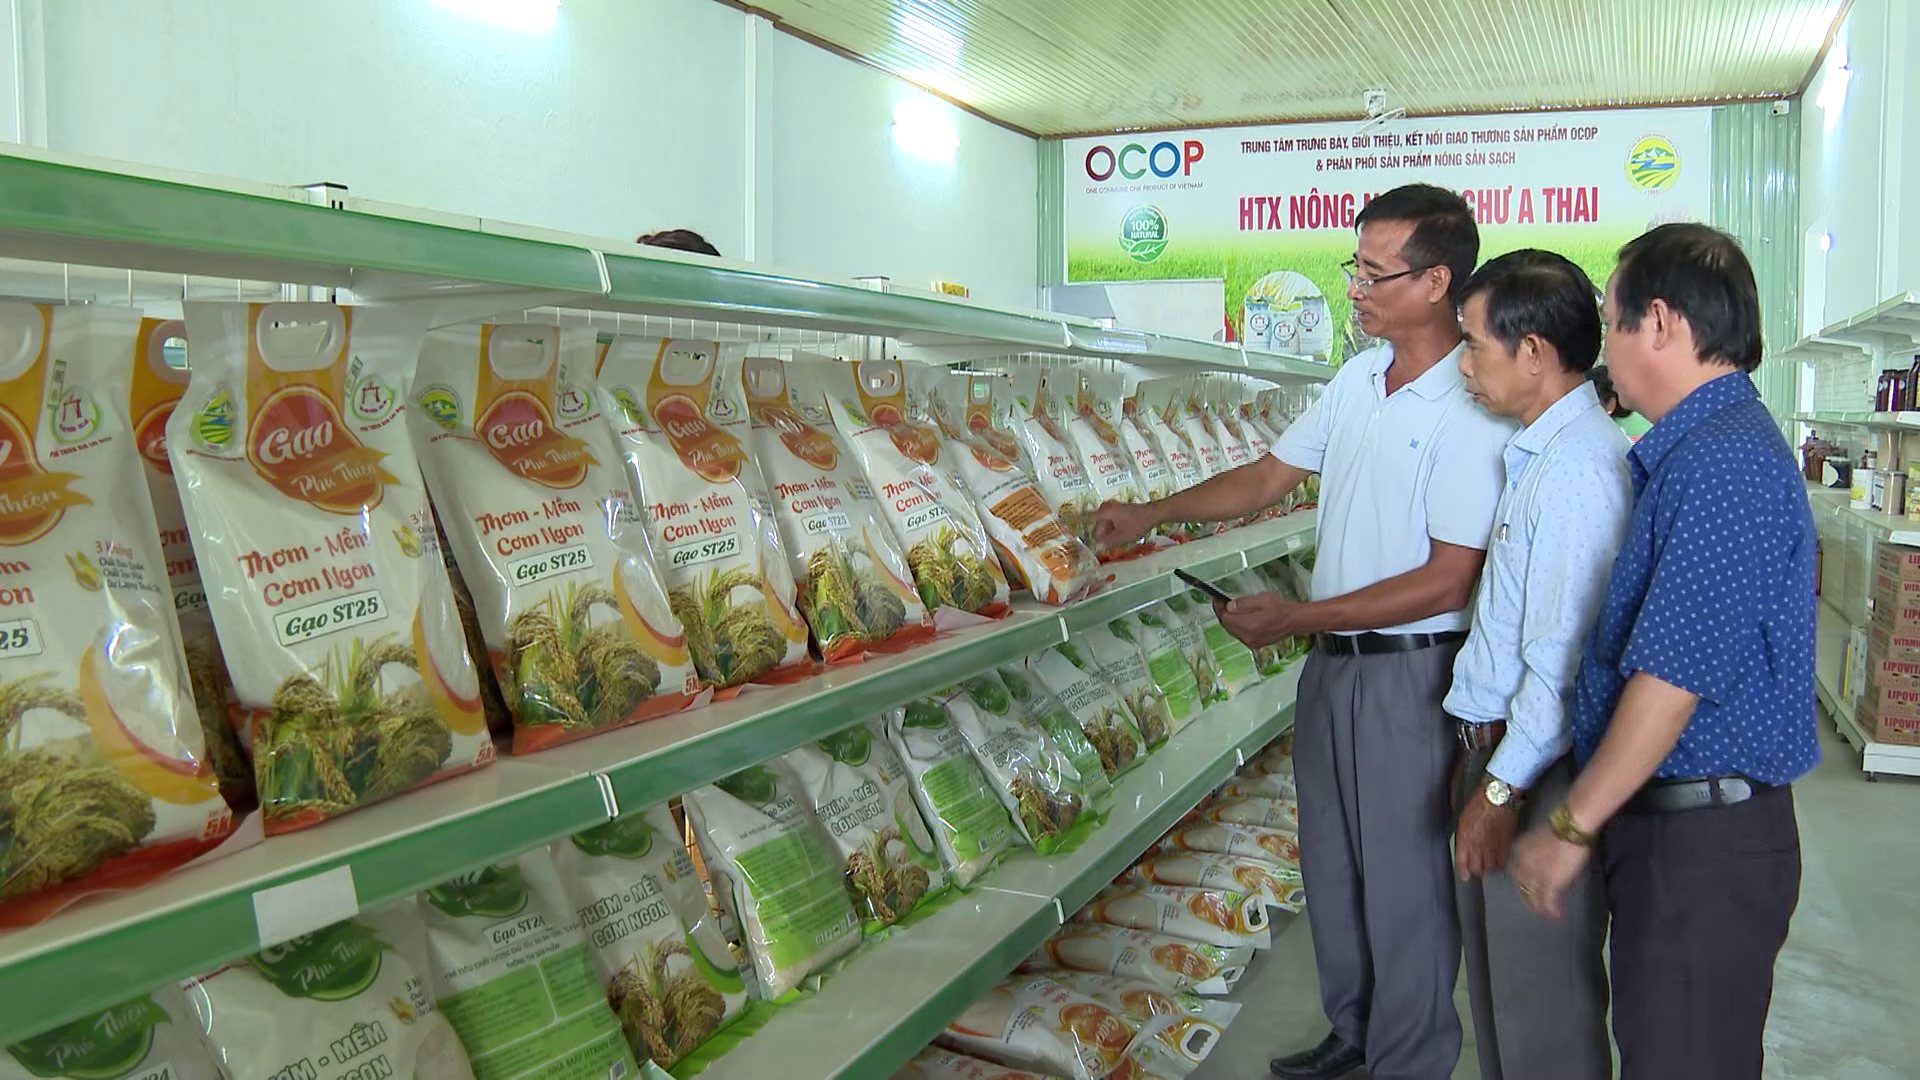 HTX Nông nghiệp Chư A Thai (huyện Phú Thiện, Gia Lai) trưng bày sản phẩm gạo ST25. Ảnh: Đăng Lâm.